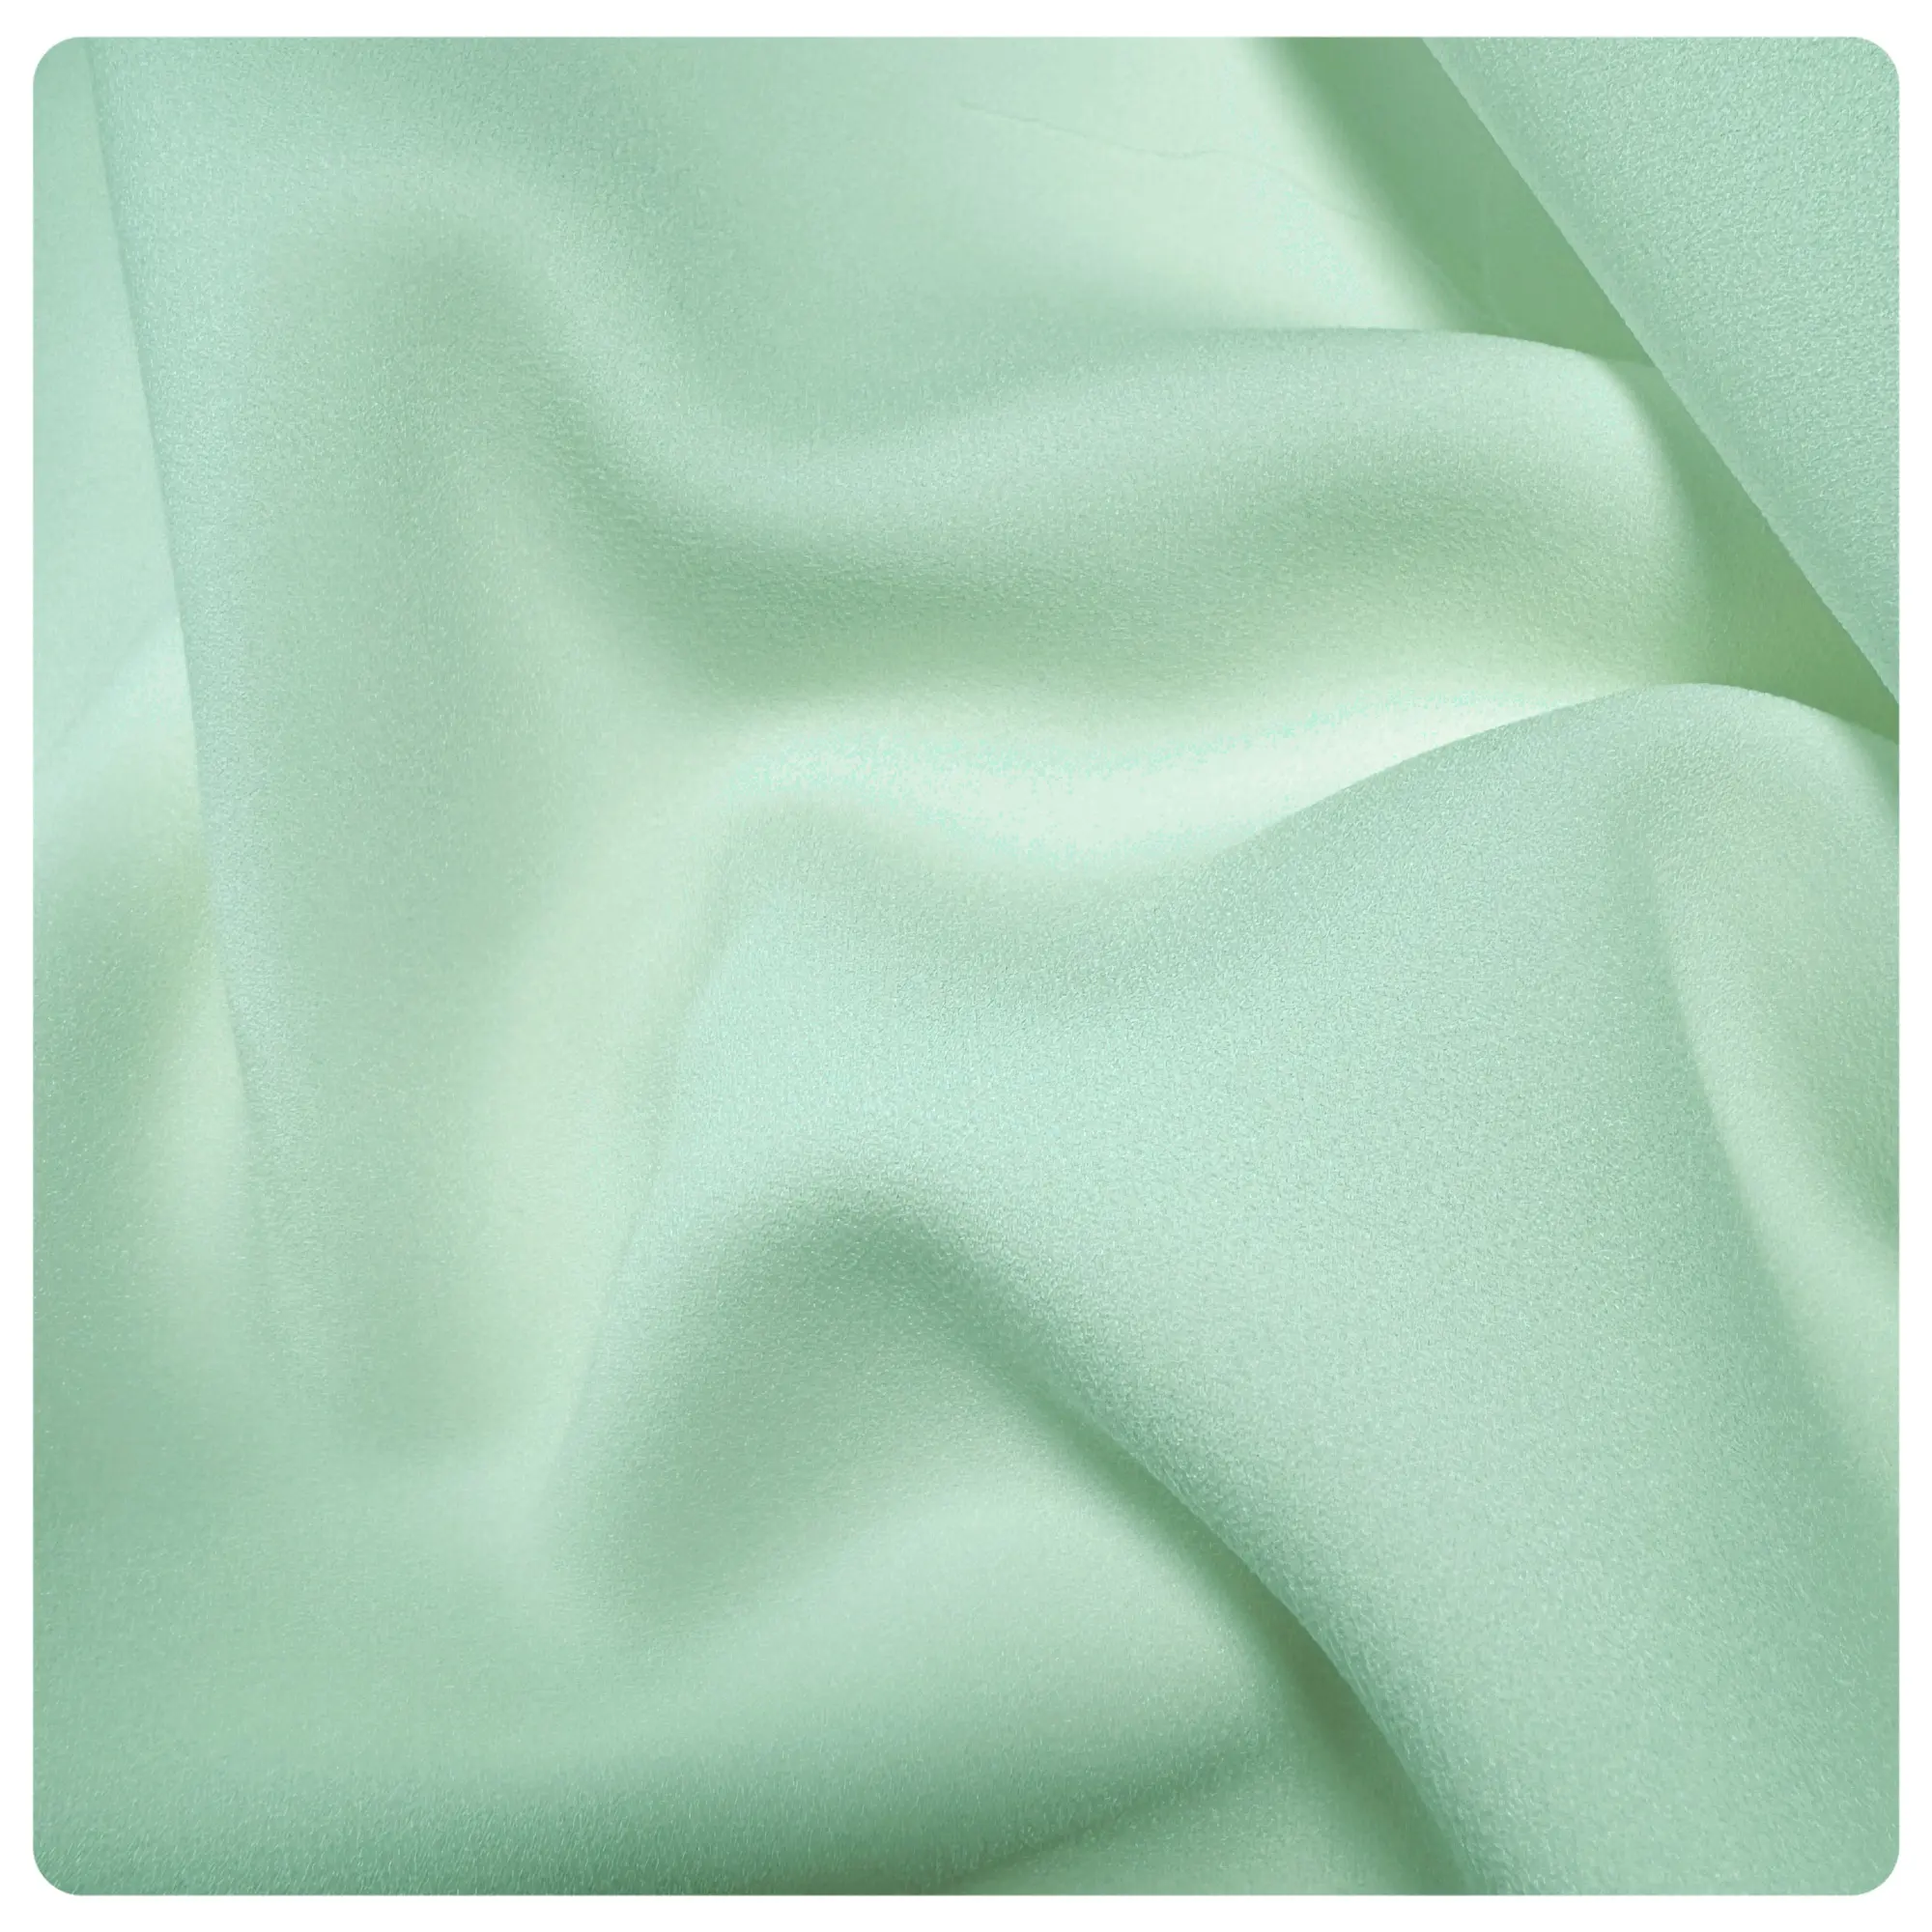 Light weight crepe chiffon fabrics 100%polyester chiffon for clothing dress